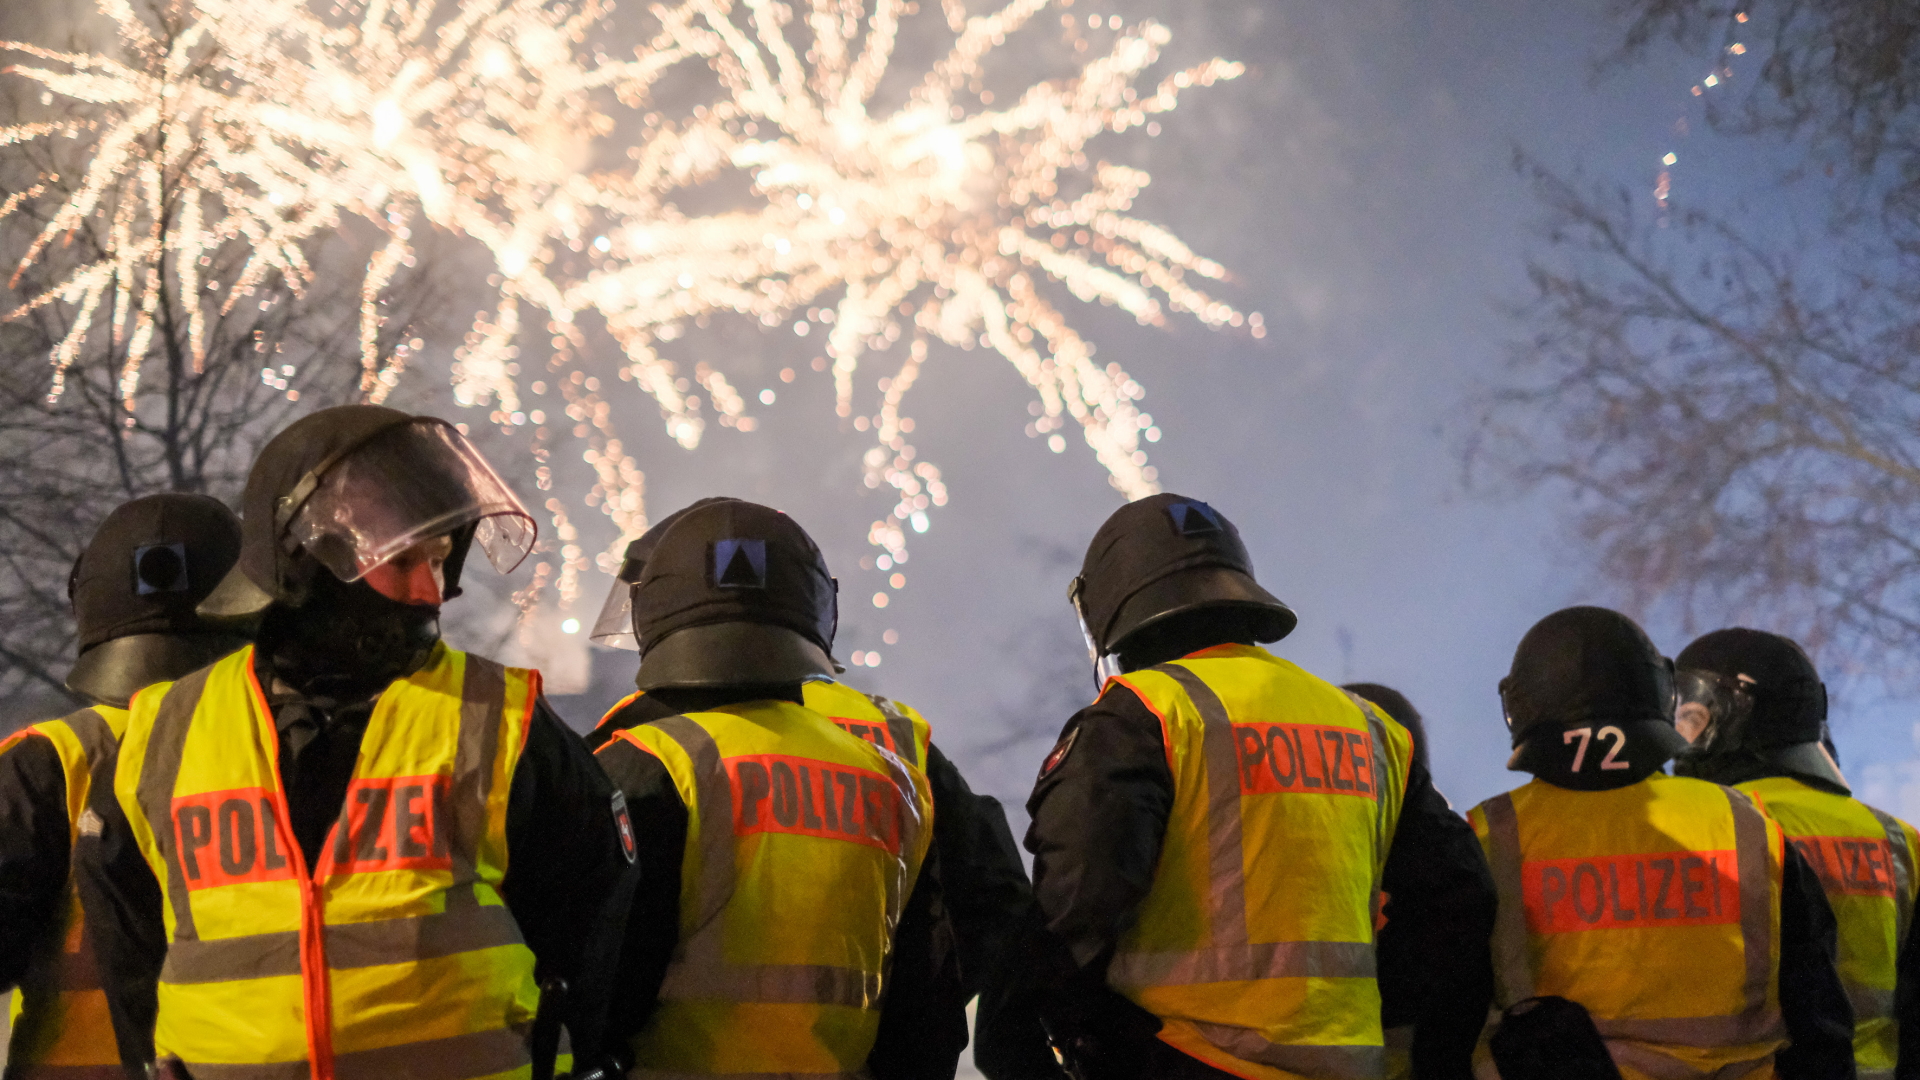 Polizei in Hannover in einem Gebiet, in dem Böllern verboten ist. | dpa